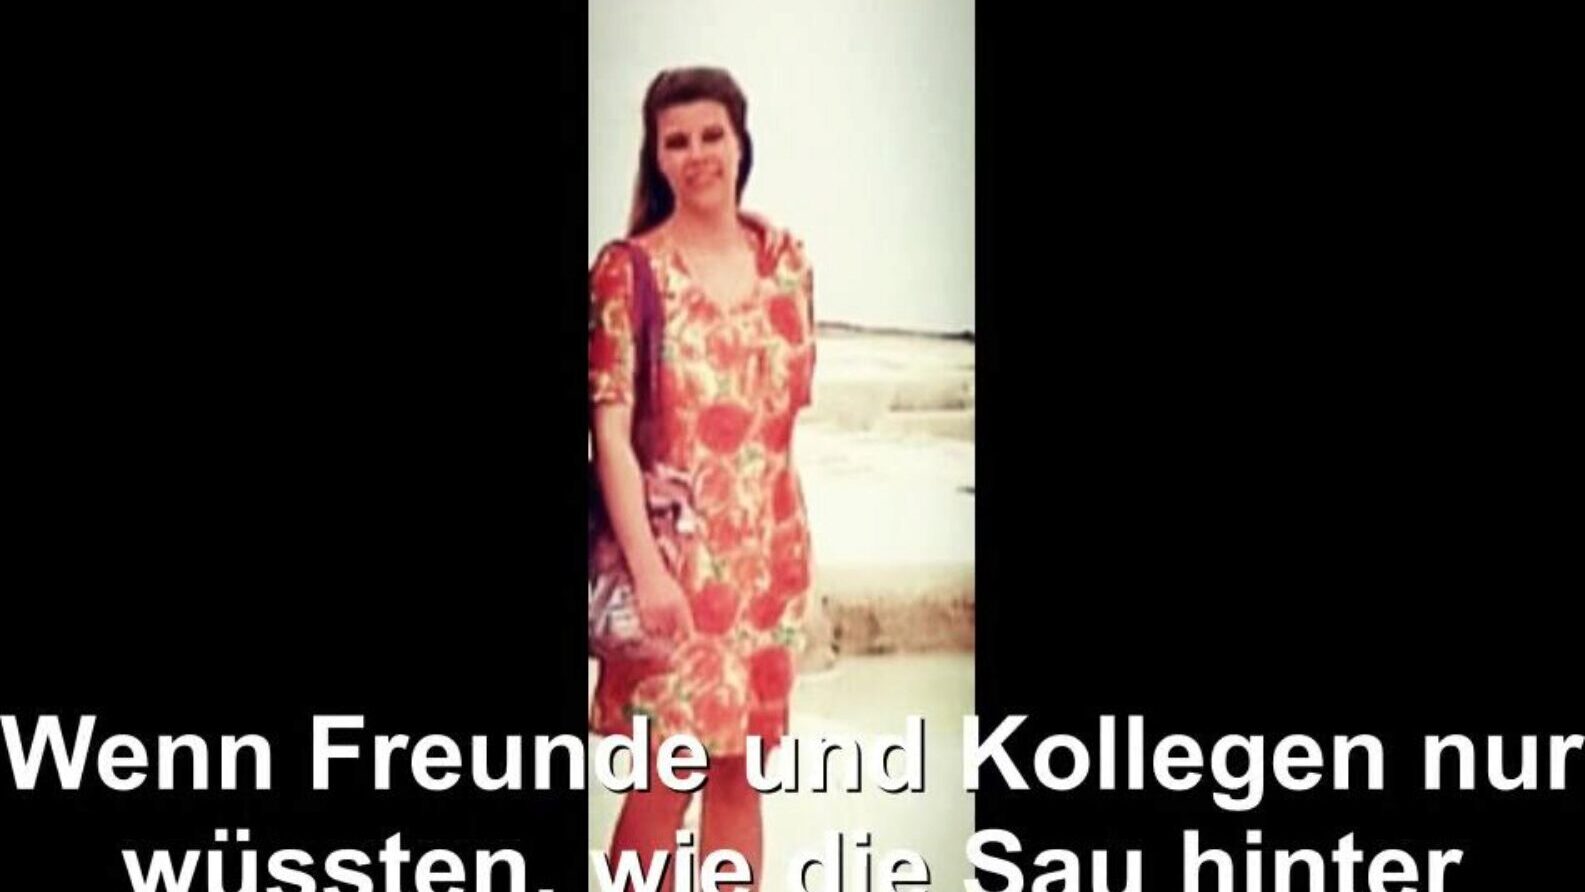 német háziasszony kitett, ingyenes cső német hd pornó bd óra német háziasszony exponált klip a xhamsteren, a legnagyobb hd fucky-fucky tube weboldalon rengeteg ingyenes cső német német feleség és házi készítésű pornó film jelenetek